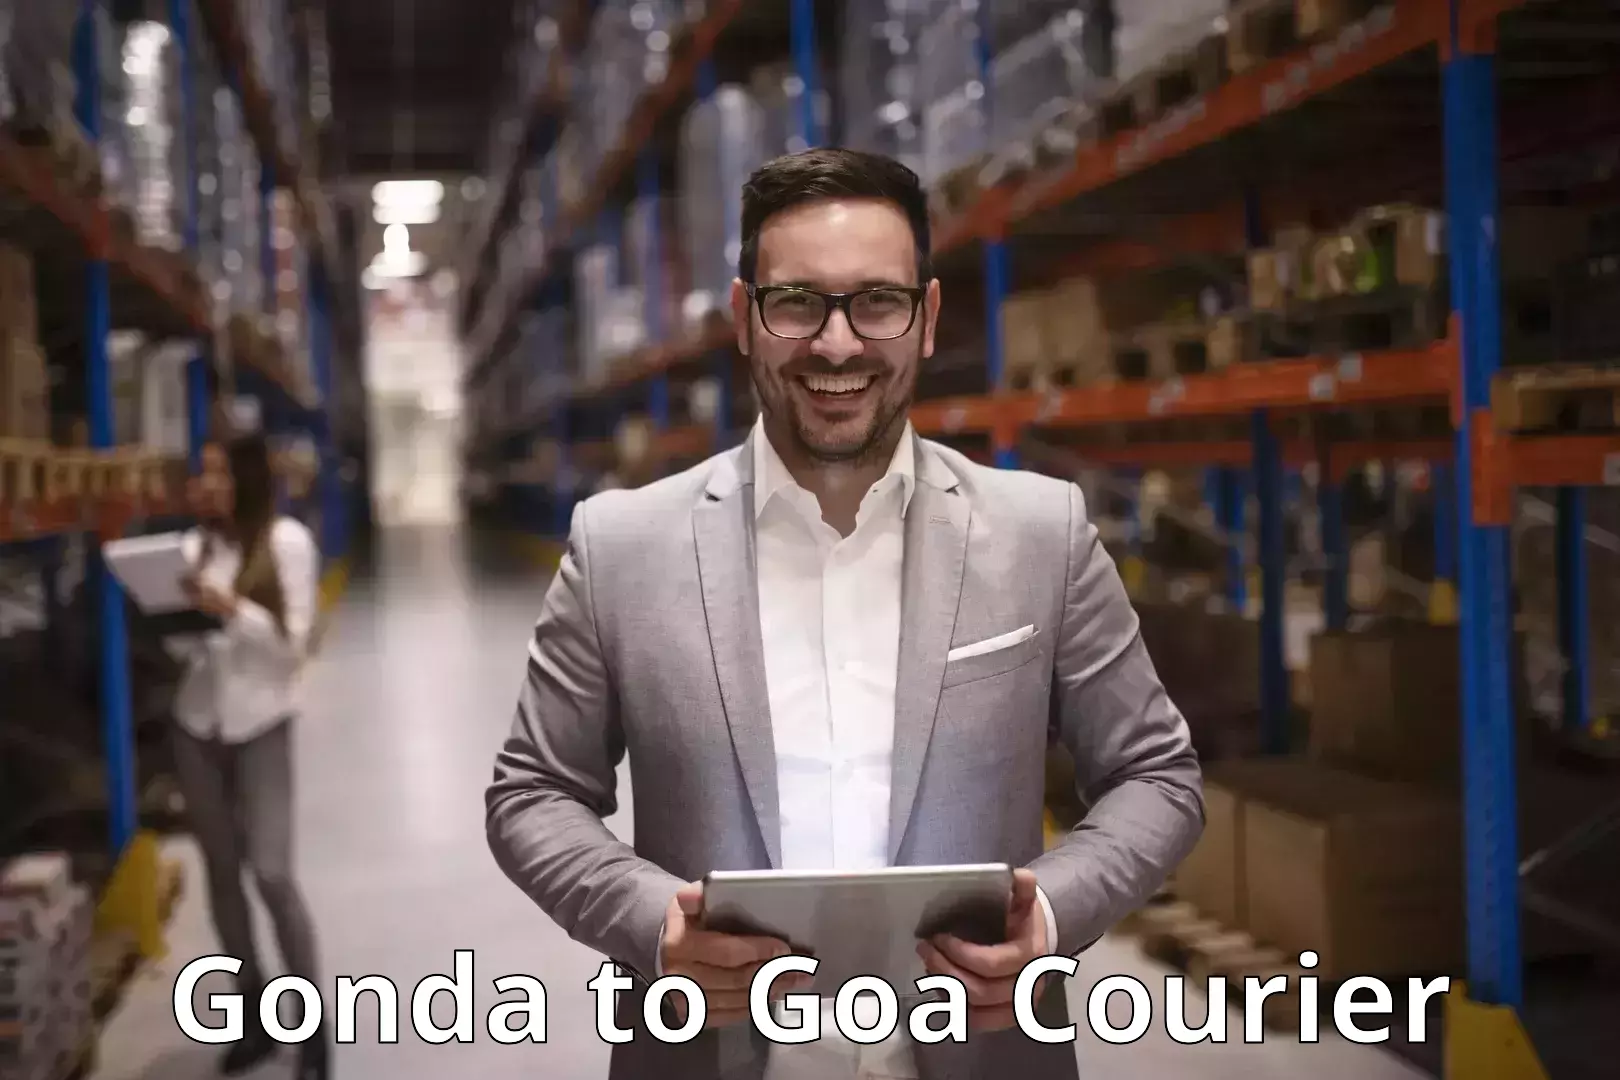 24-hour courier service Gonda to Goa